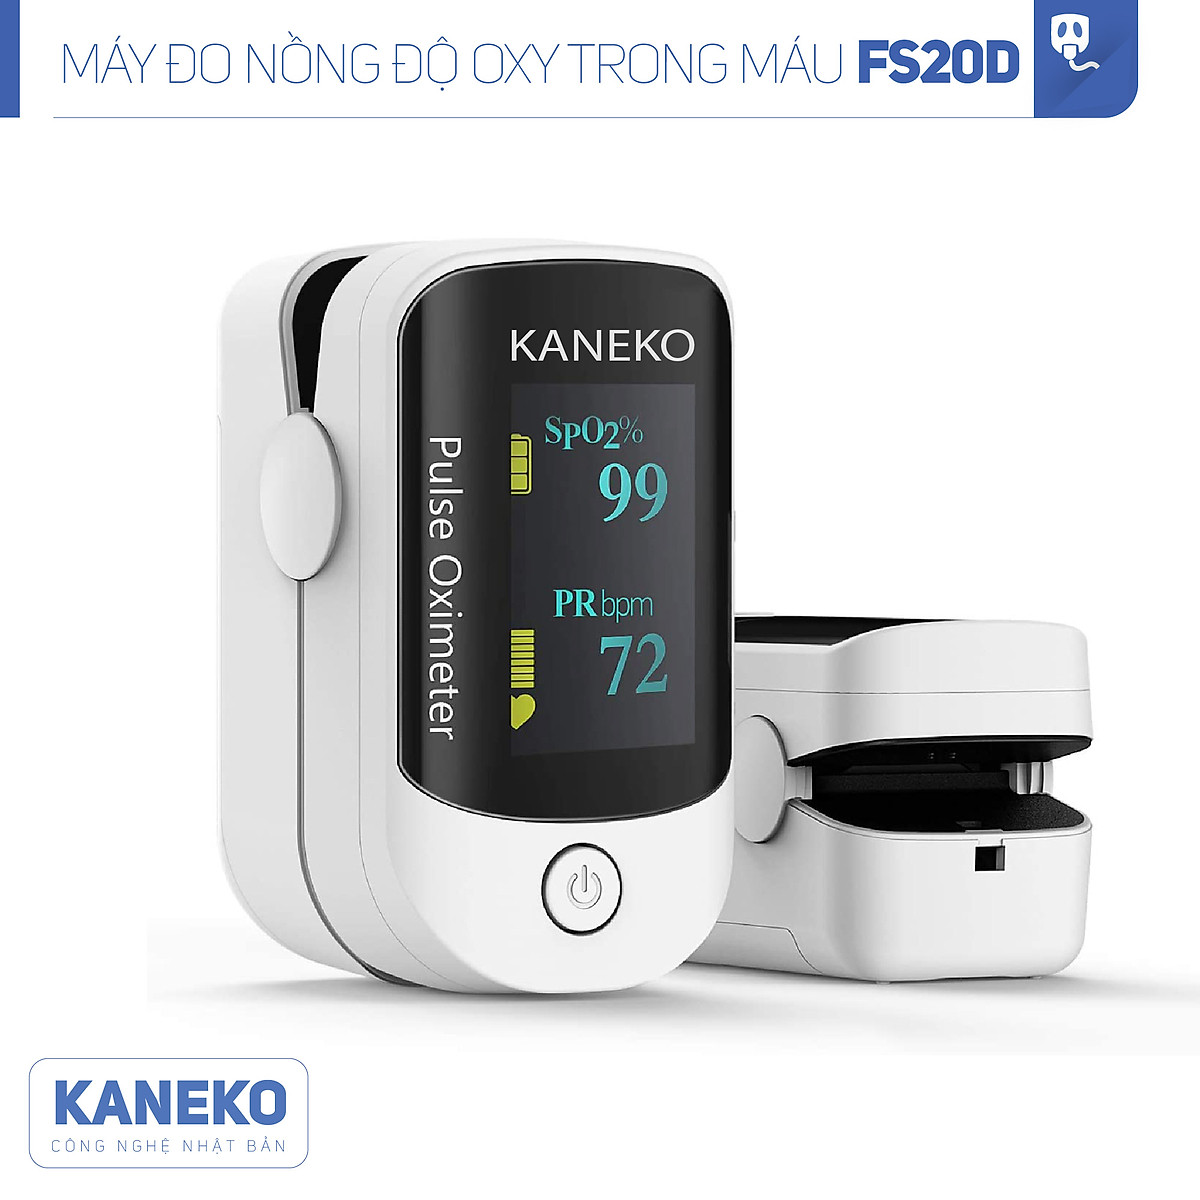 Máy đo nồng độ oxy trong máu SPO2 Kaneko FS20D thiết kế cao cấp